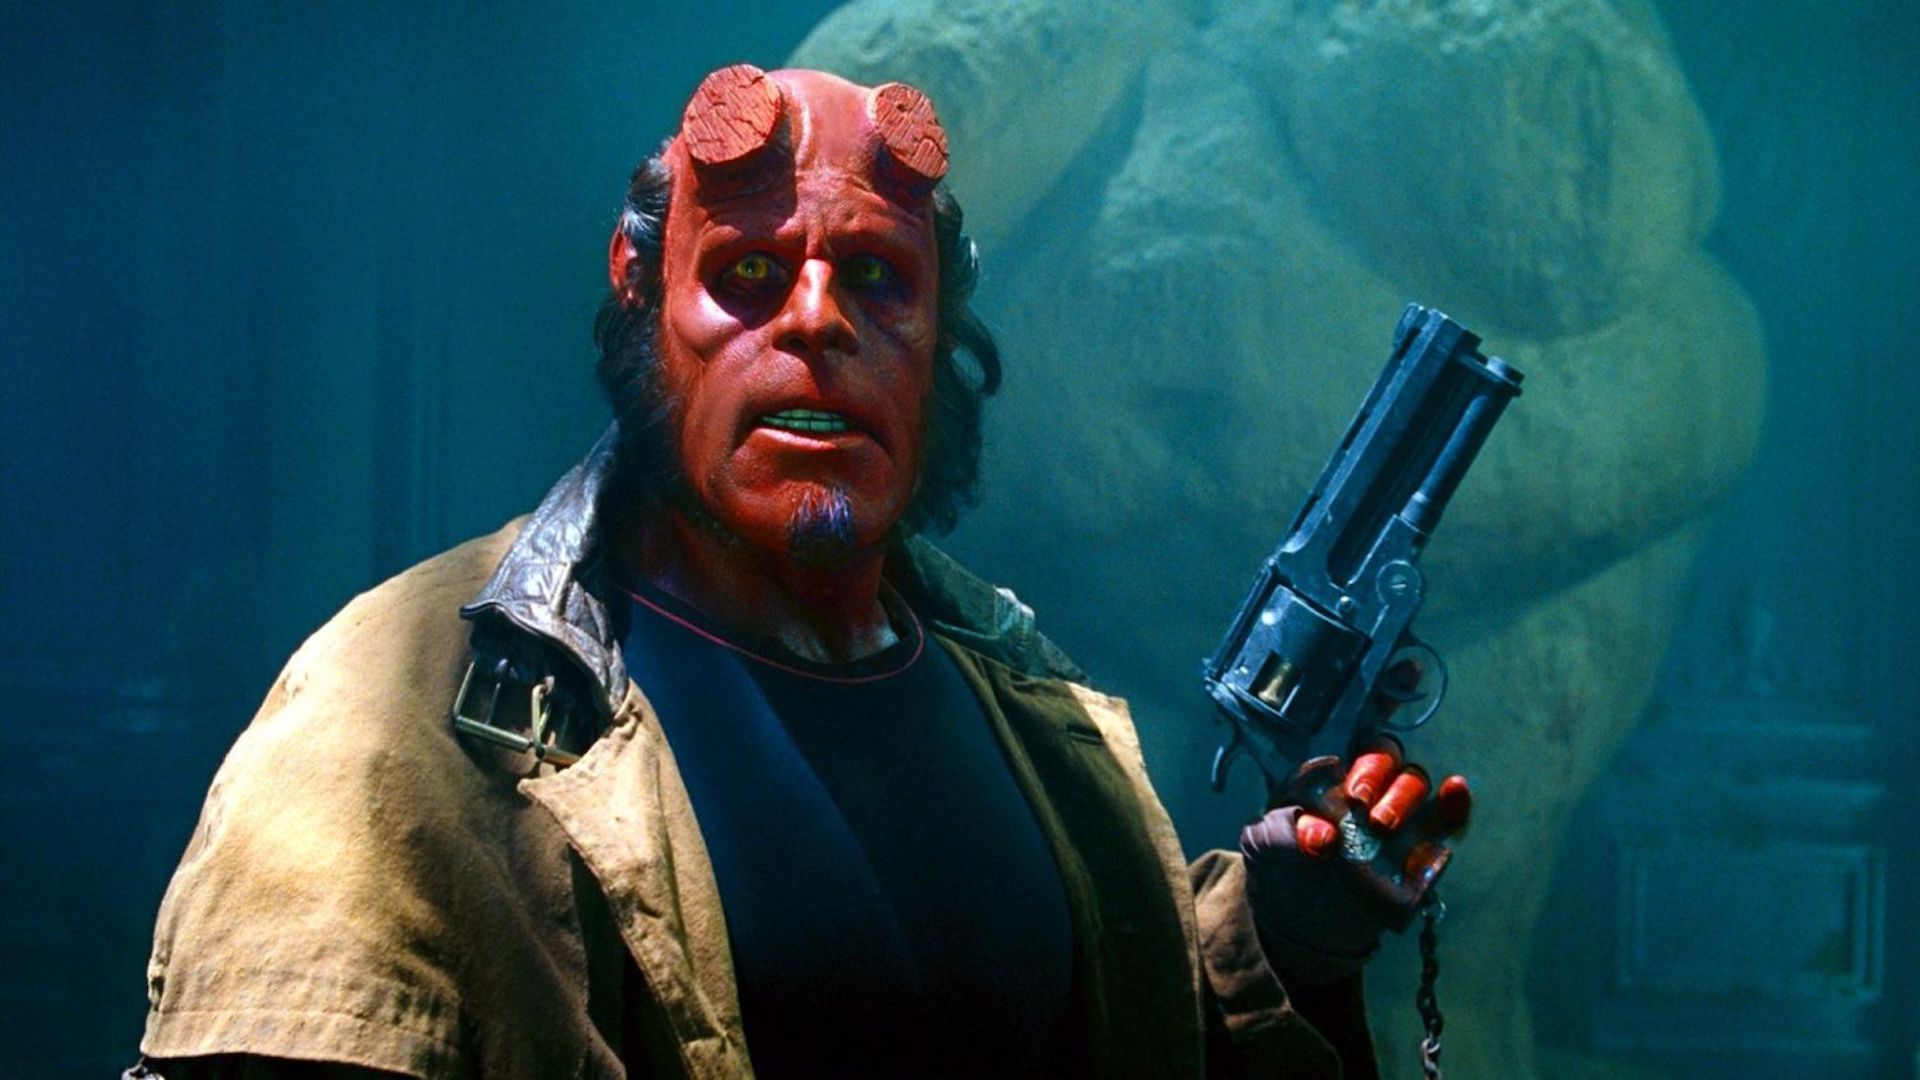 Рон Перлман взводит пистолет в фильме «Хеллбой» (2004), режиссер Гильермо дель Торо.